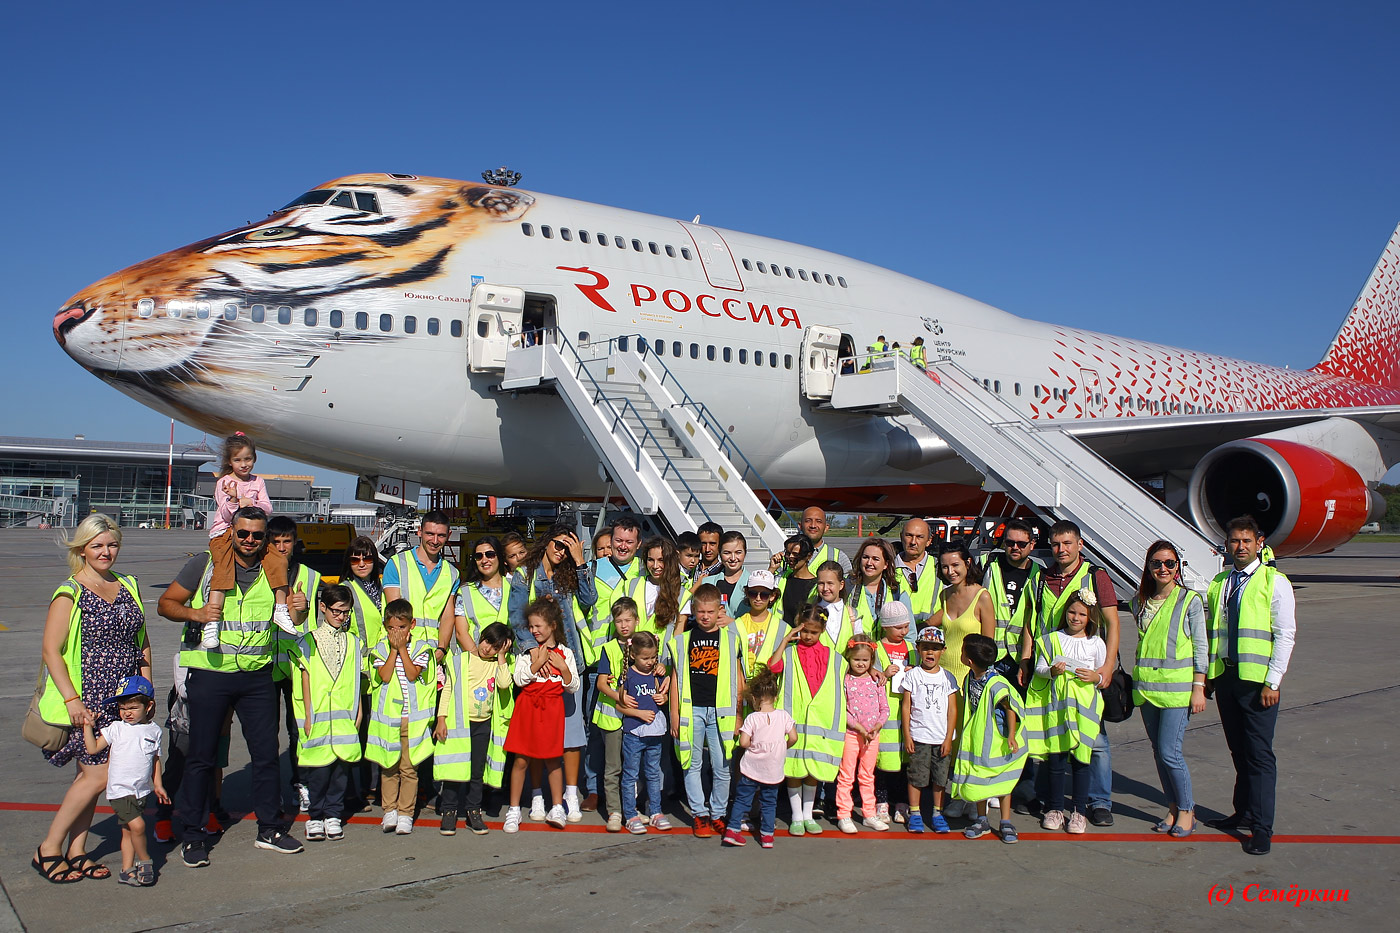 Тигролёт Boeing 747 авиакомпании Россия в казанском аэропорту